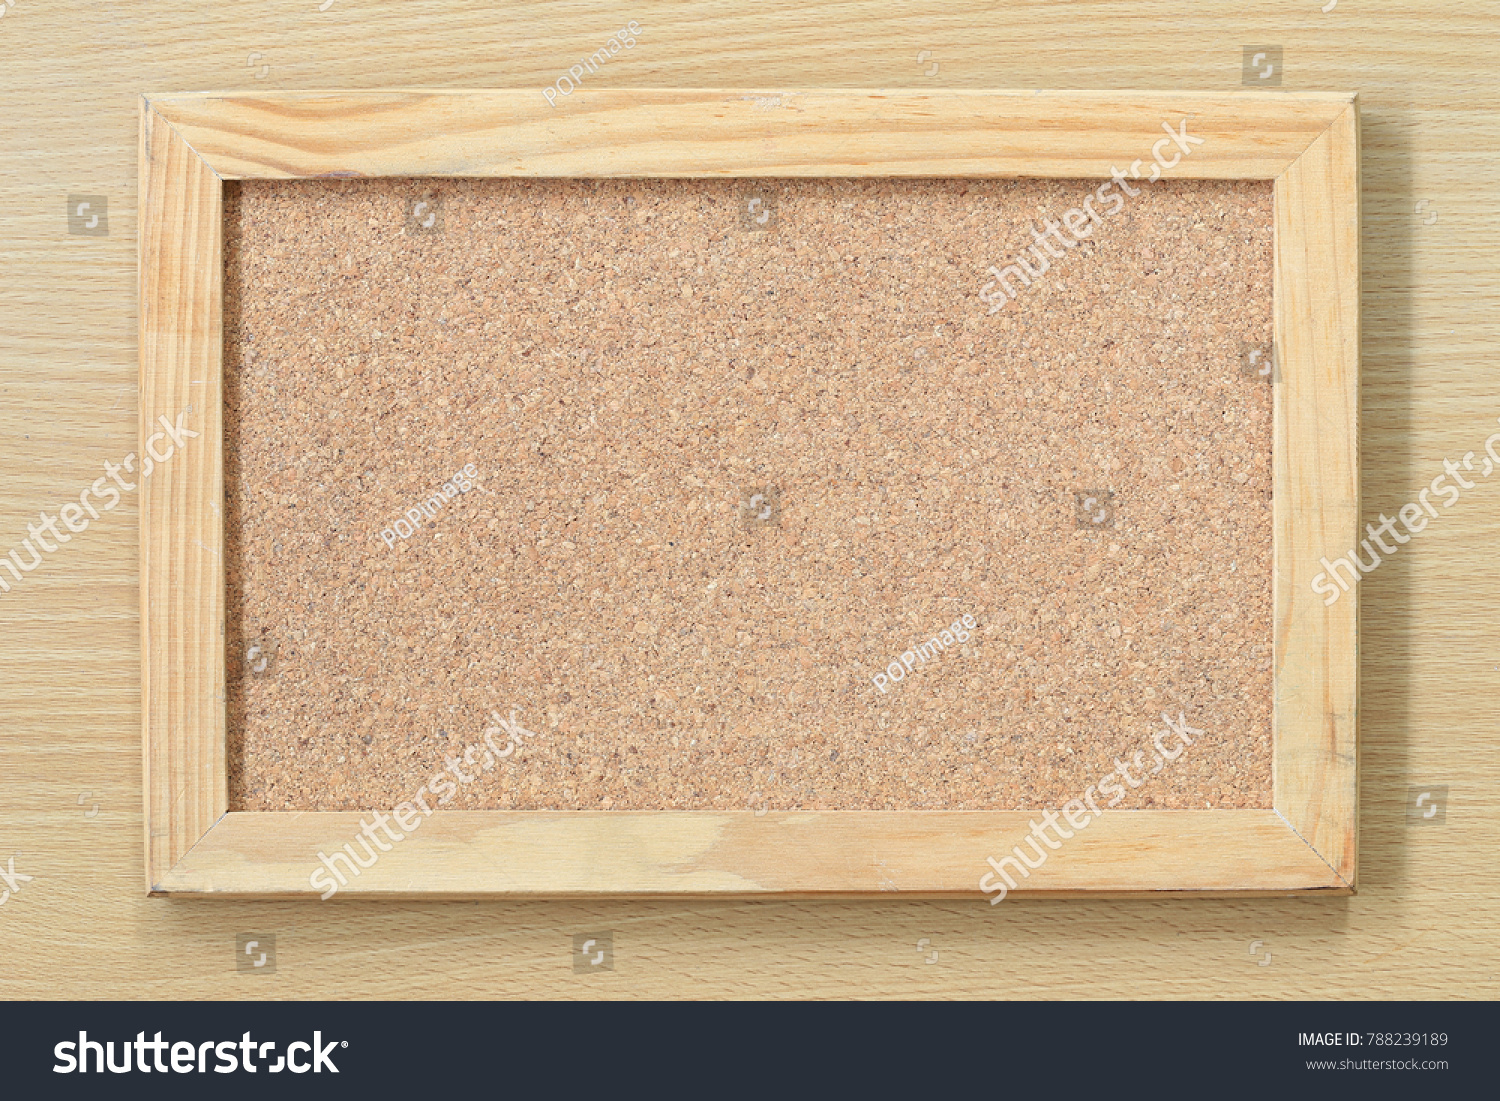 コルクボードのテクスチャ背景に空のコルクボードと木の枠がブレンチン メモ または掲示板の発表用に白い木の壁にぶら下がっている写真素材 Shutterstock